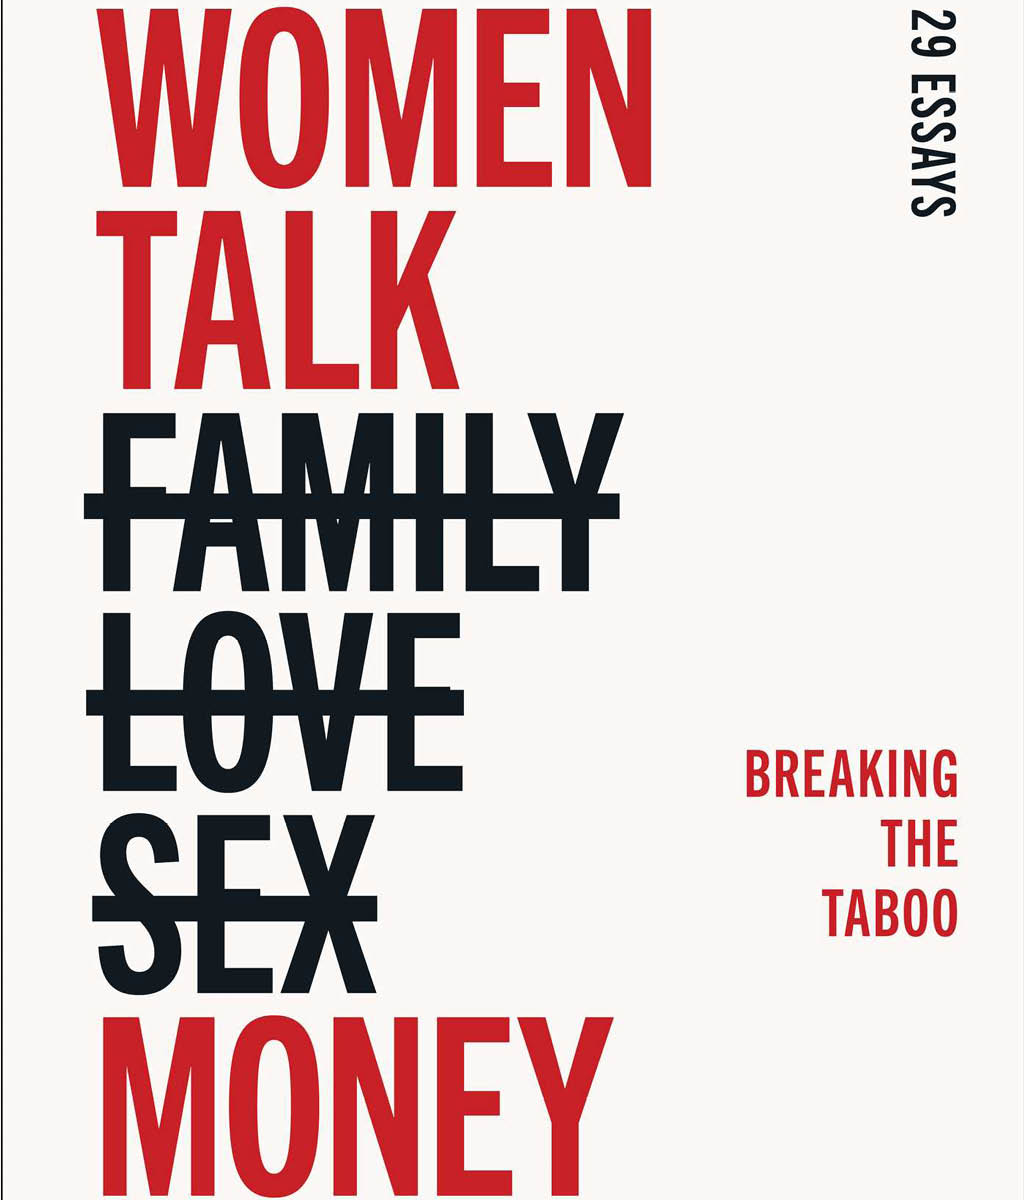 Women Talk Money Breaking the Taboo by Rebecca Walker